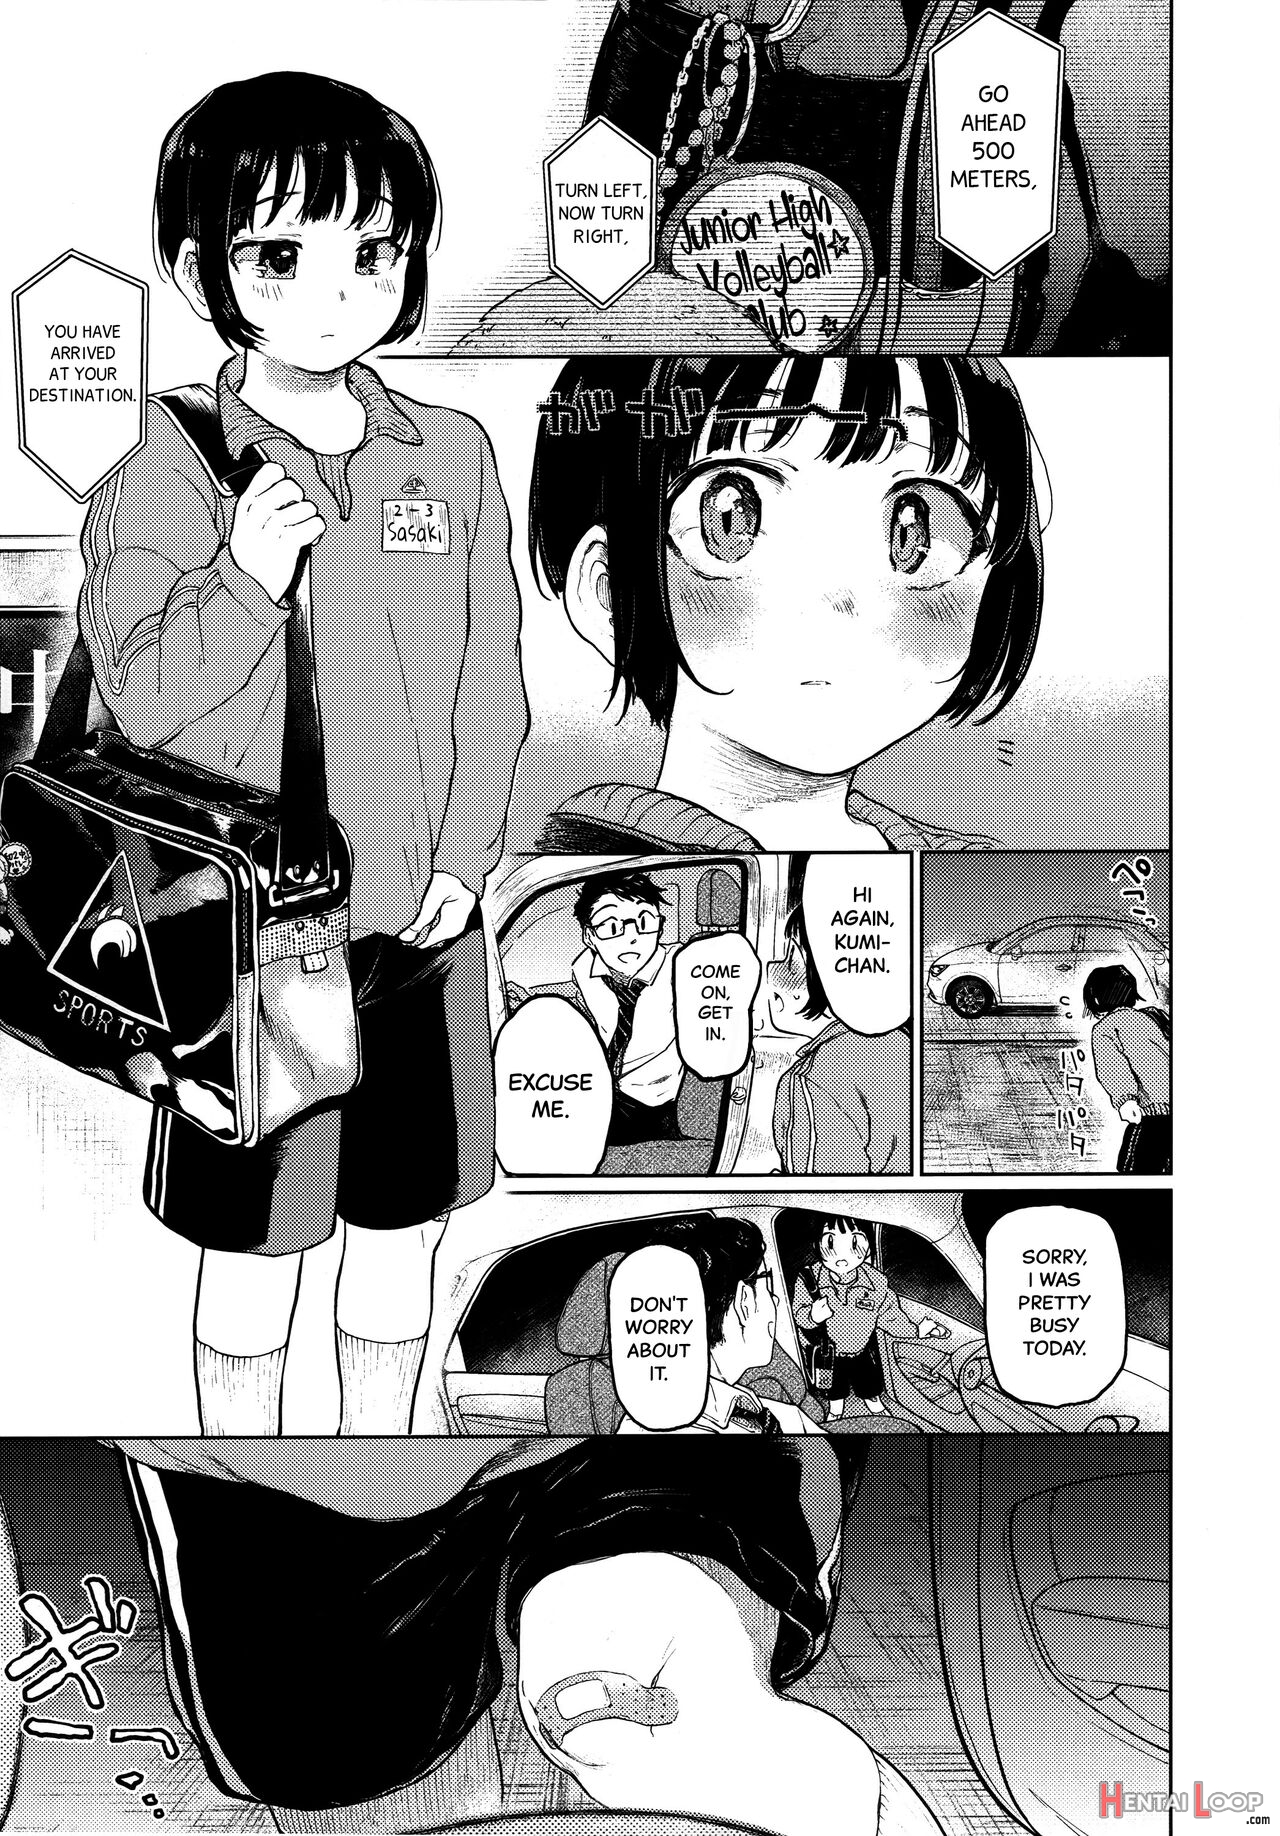 Kumi-chan page 2